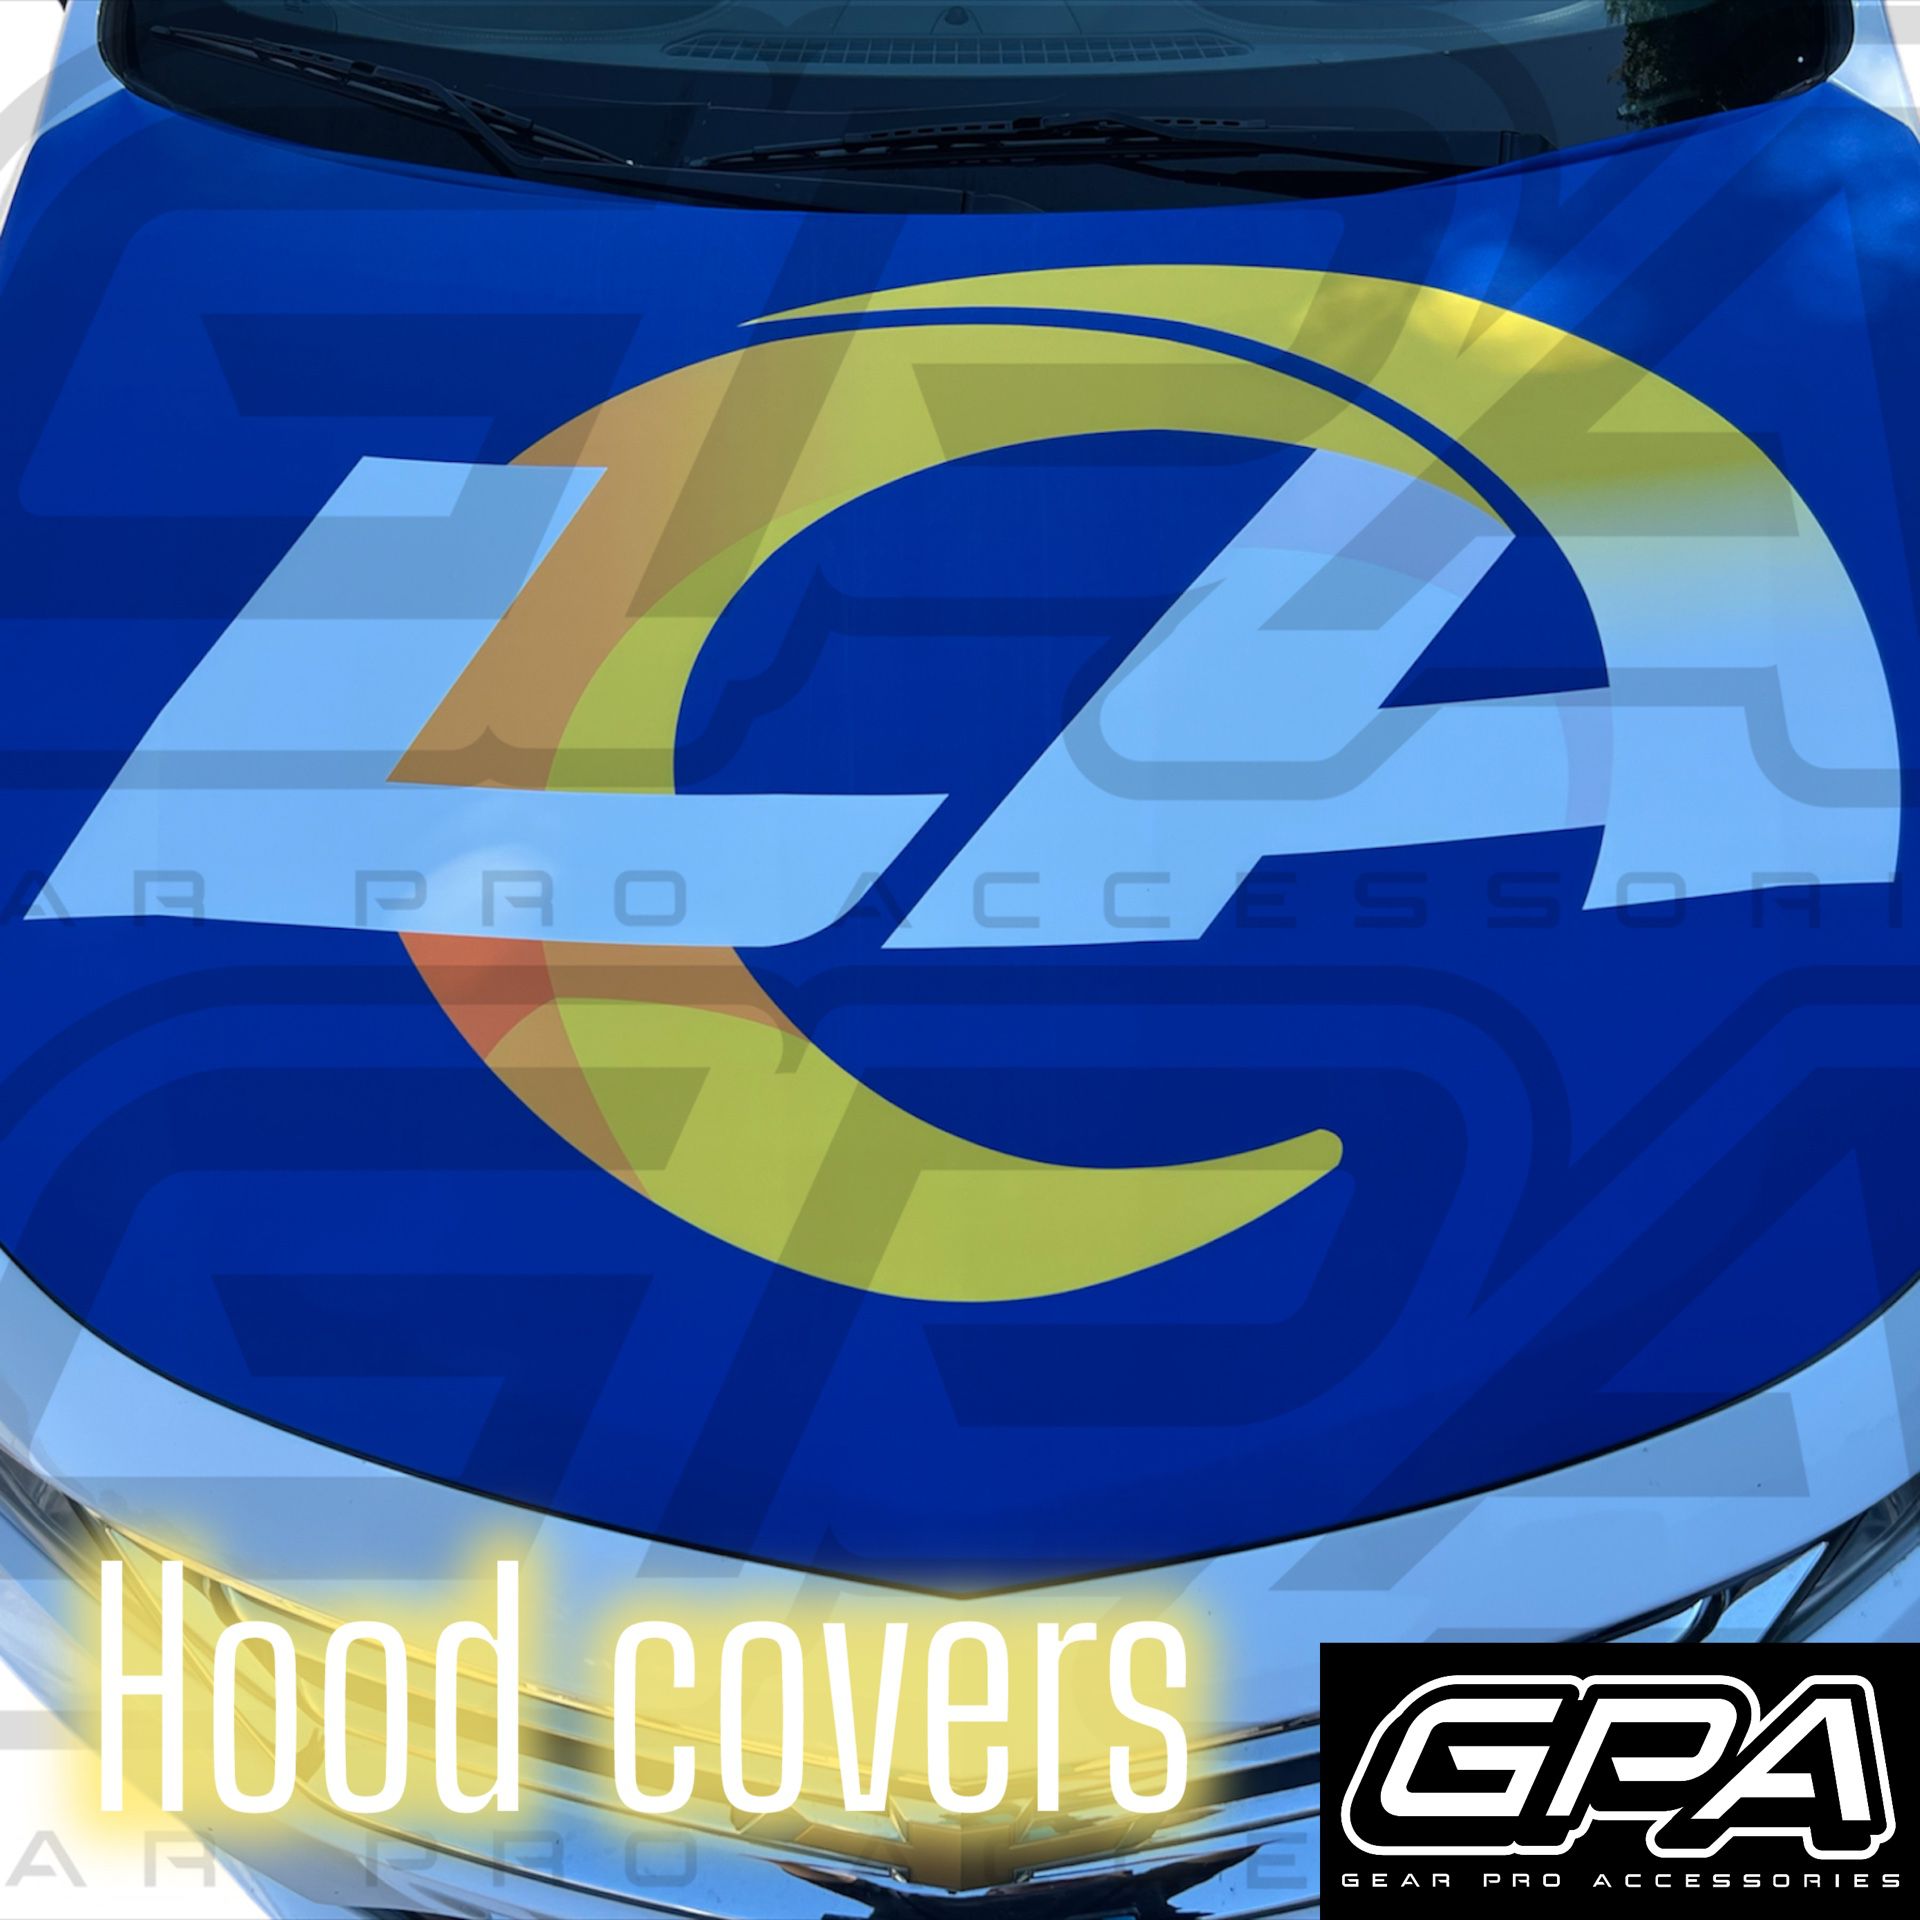 LA Chargers Car Hood Cover NFL 